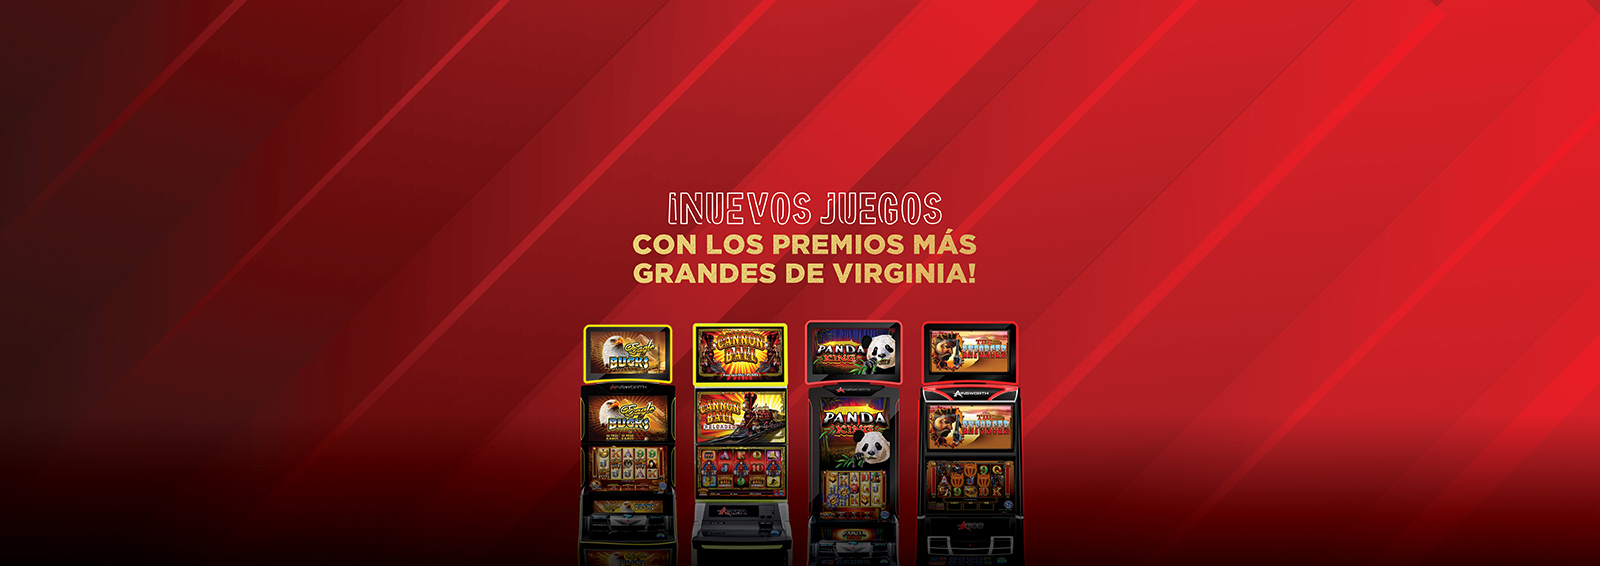 ¡Nuevos juegos con los premios más grandes de Virginia!